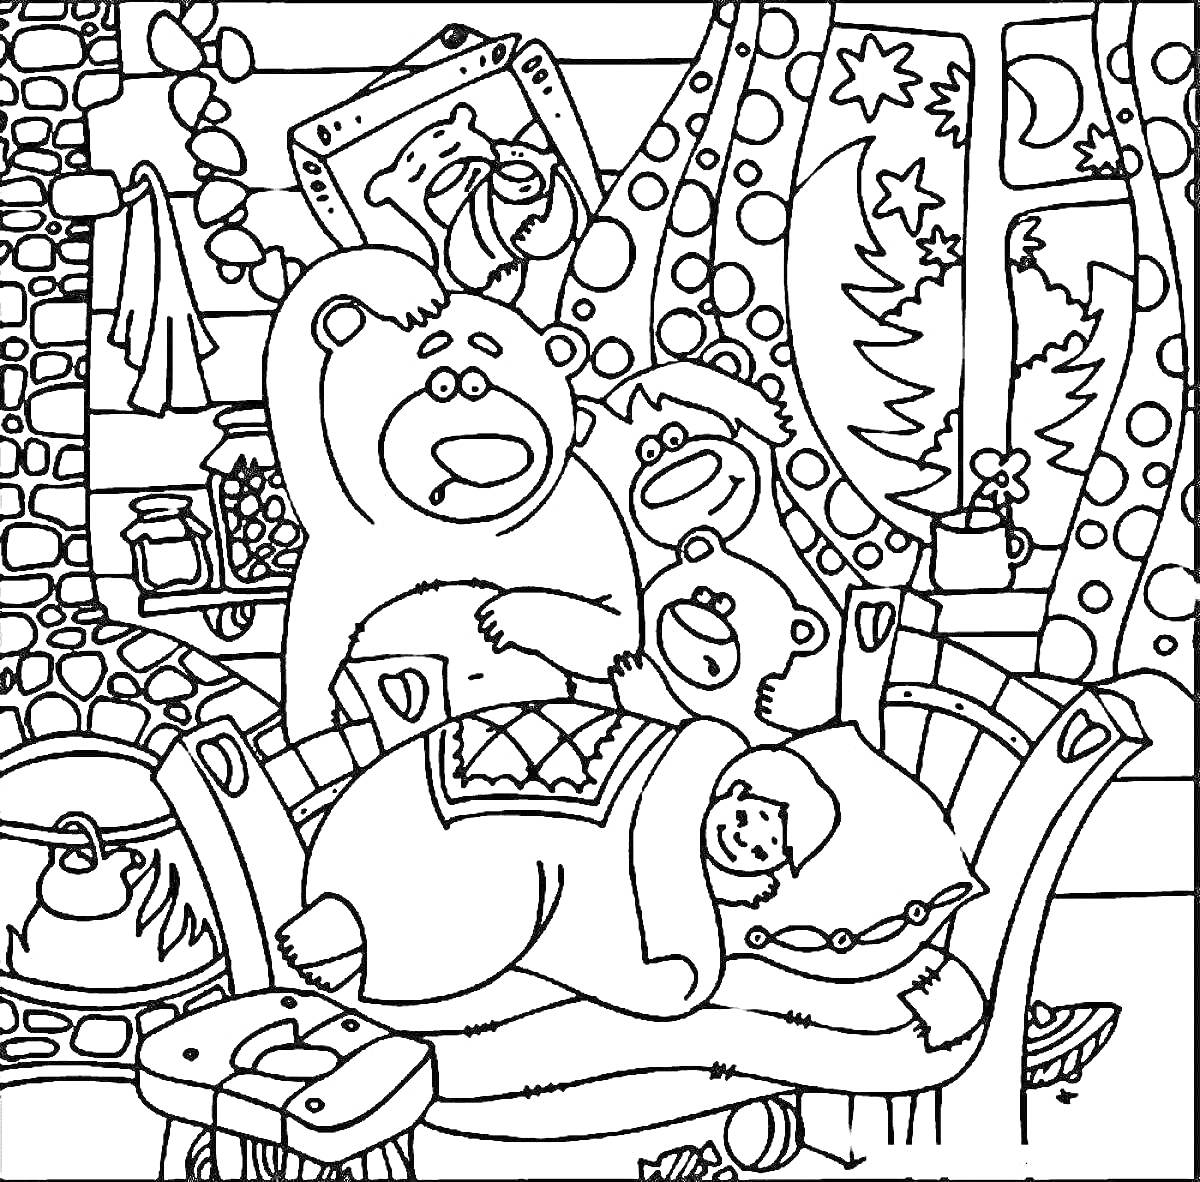 Раскраска Три медведя в доме с девочкой на кровати, камином, окнами с новогодними украшениями, столиком и декором